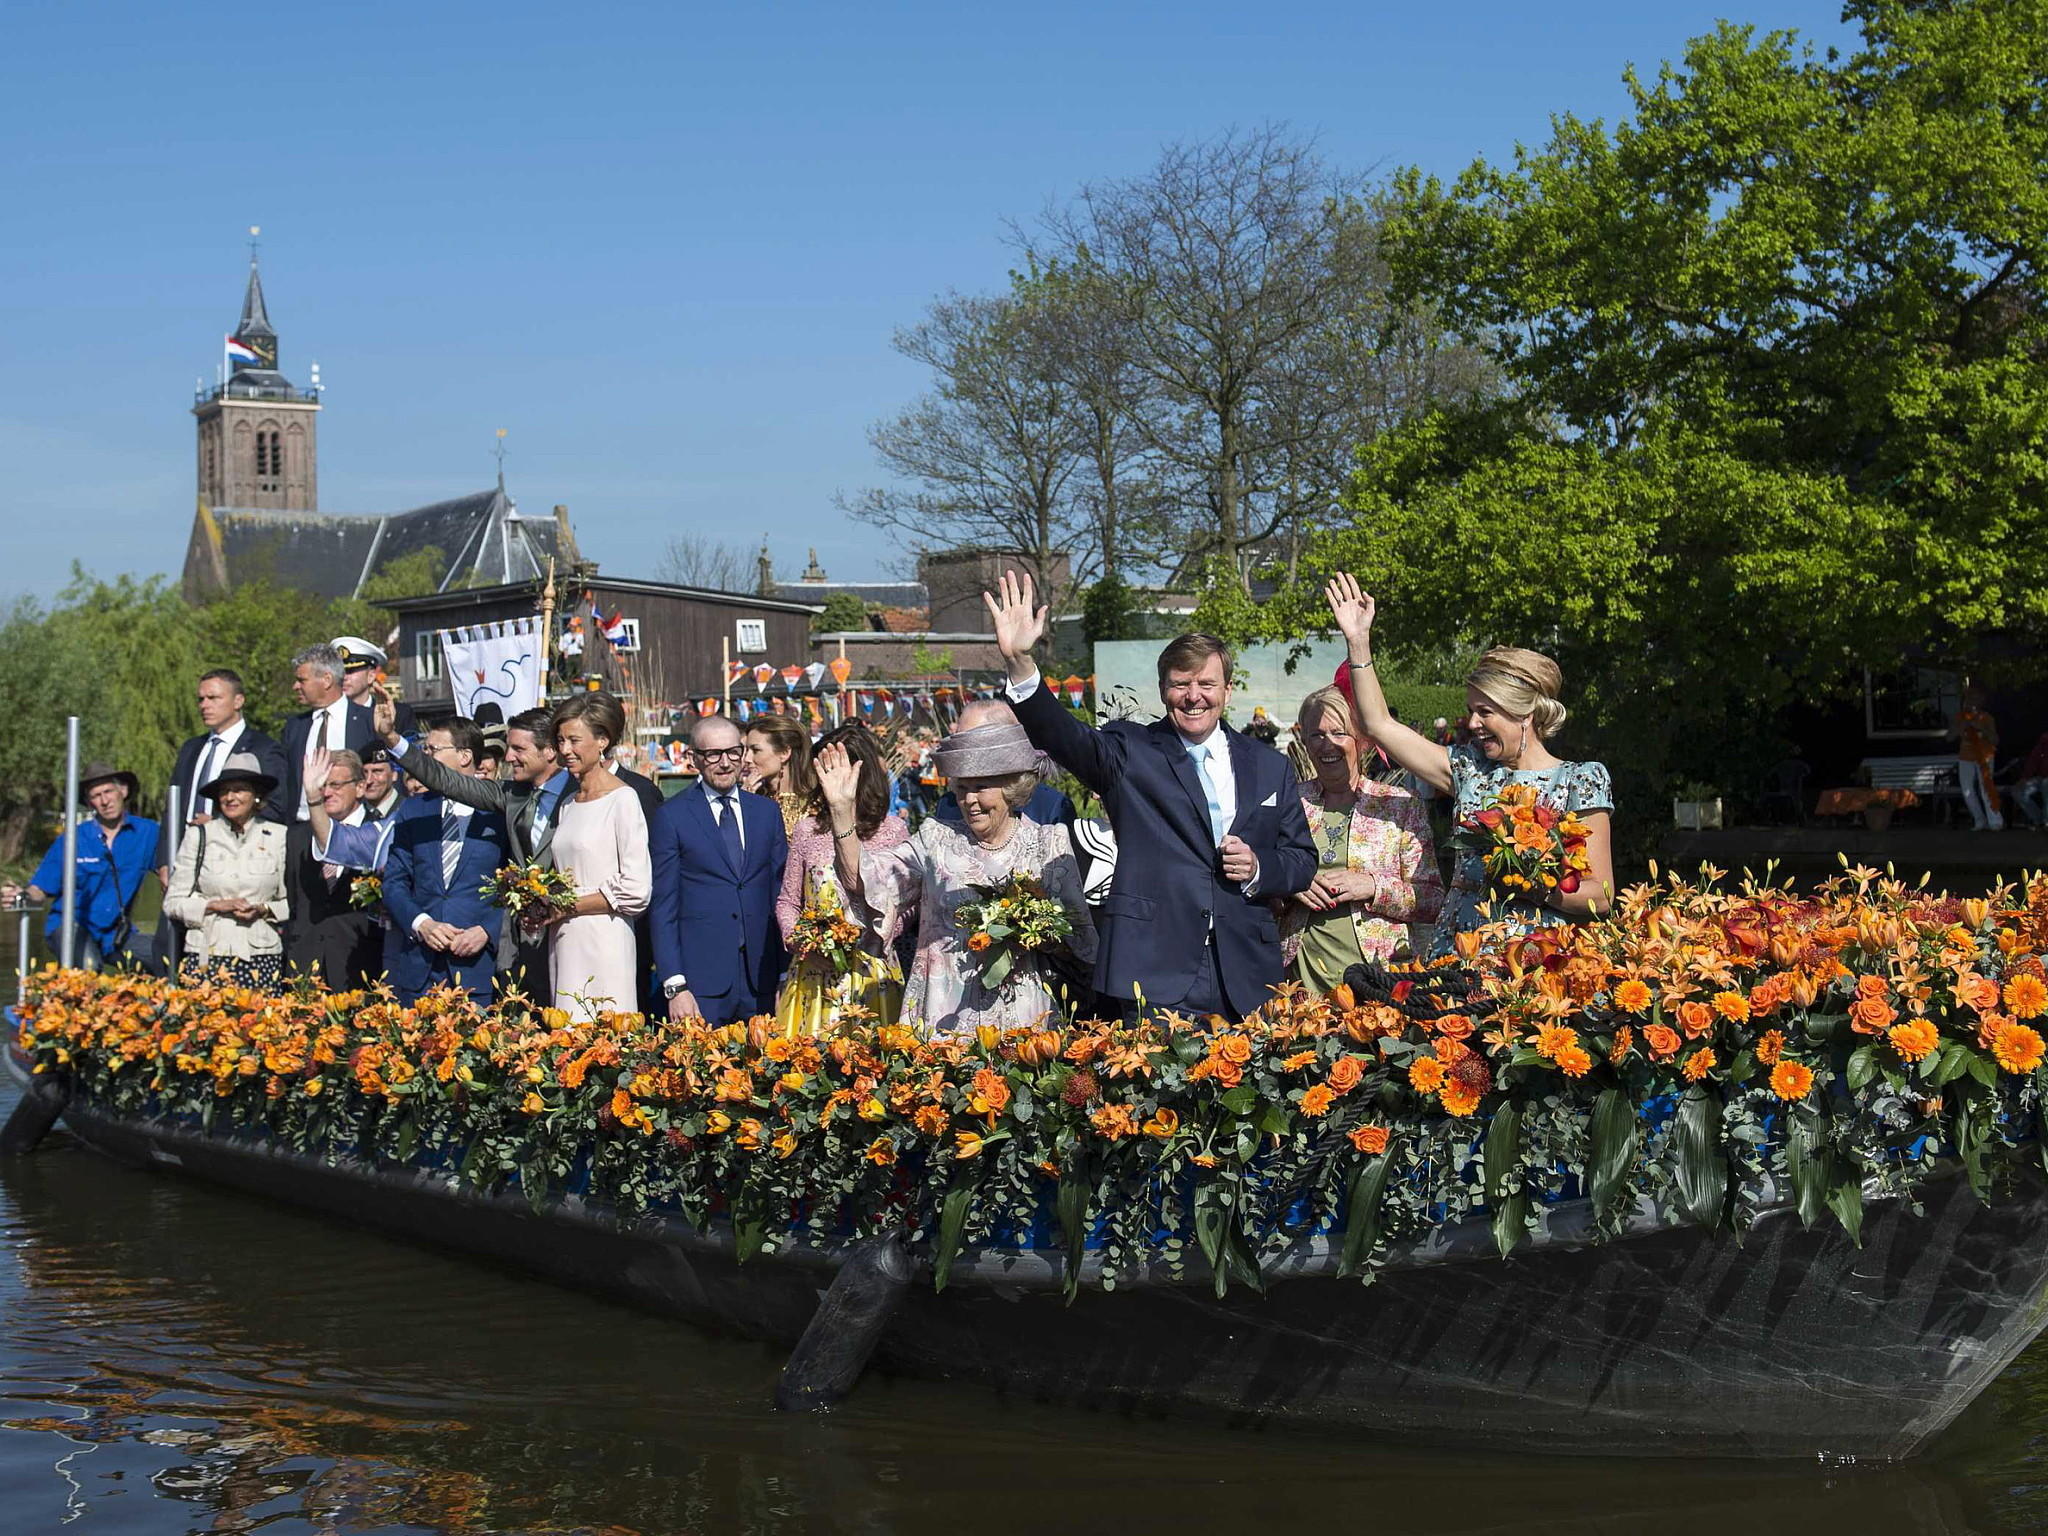 Königstag in den Niederlanden